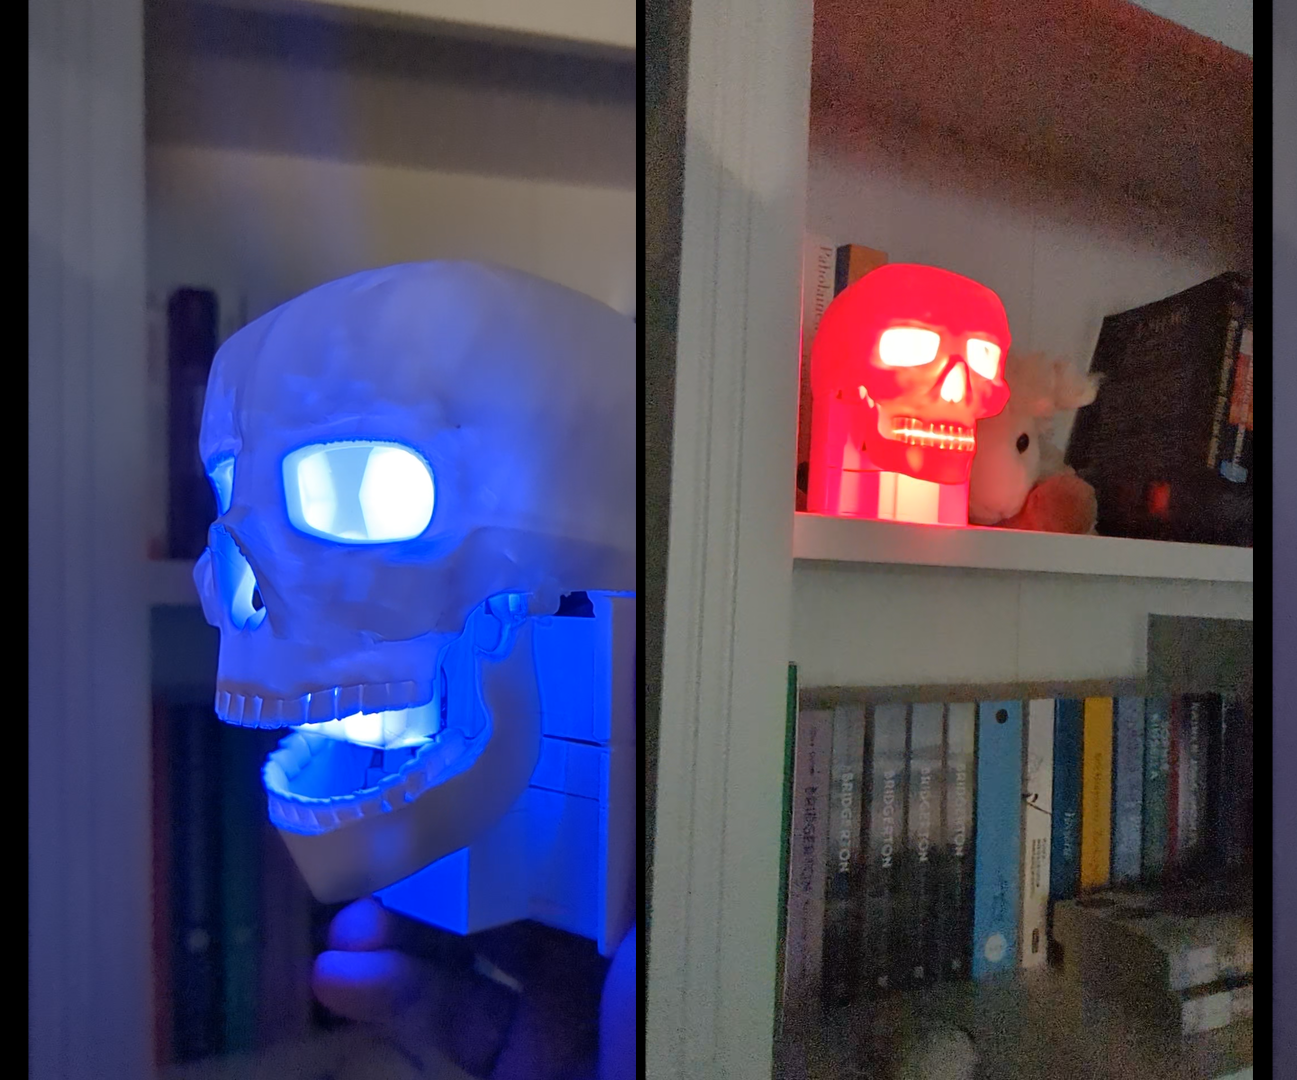 Sound Reacting Skull for Halloween!